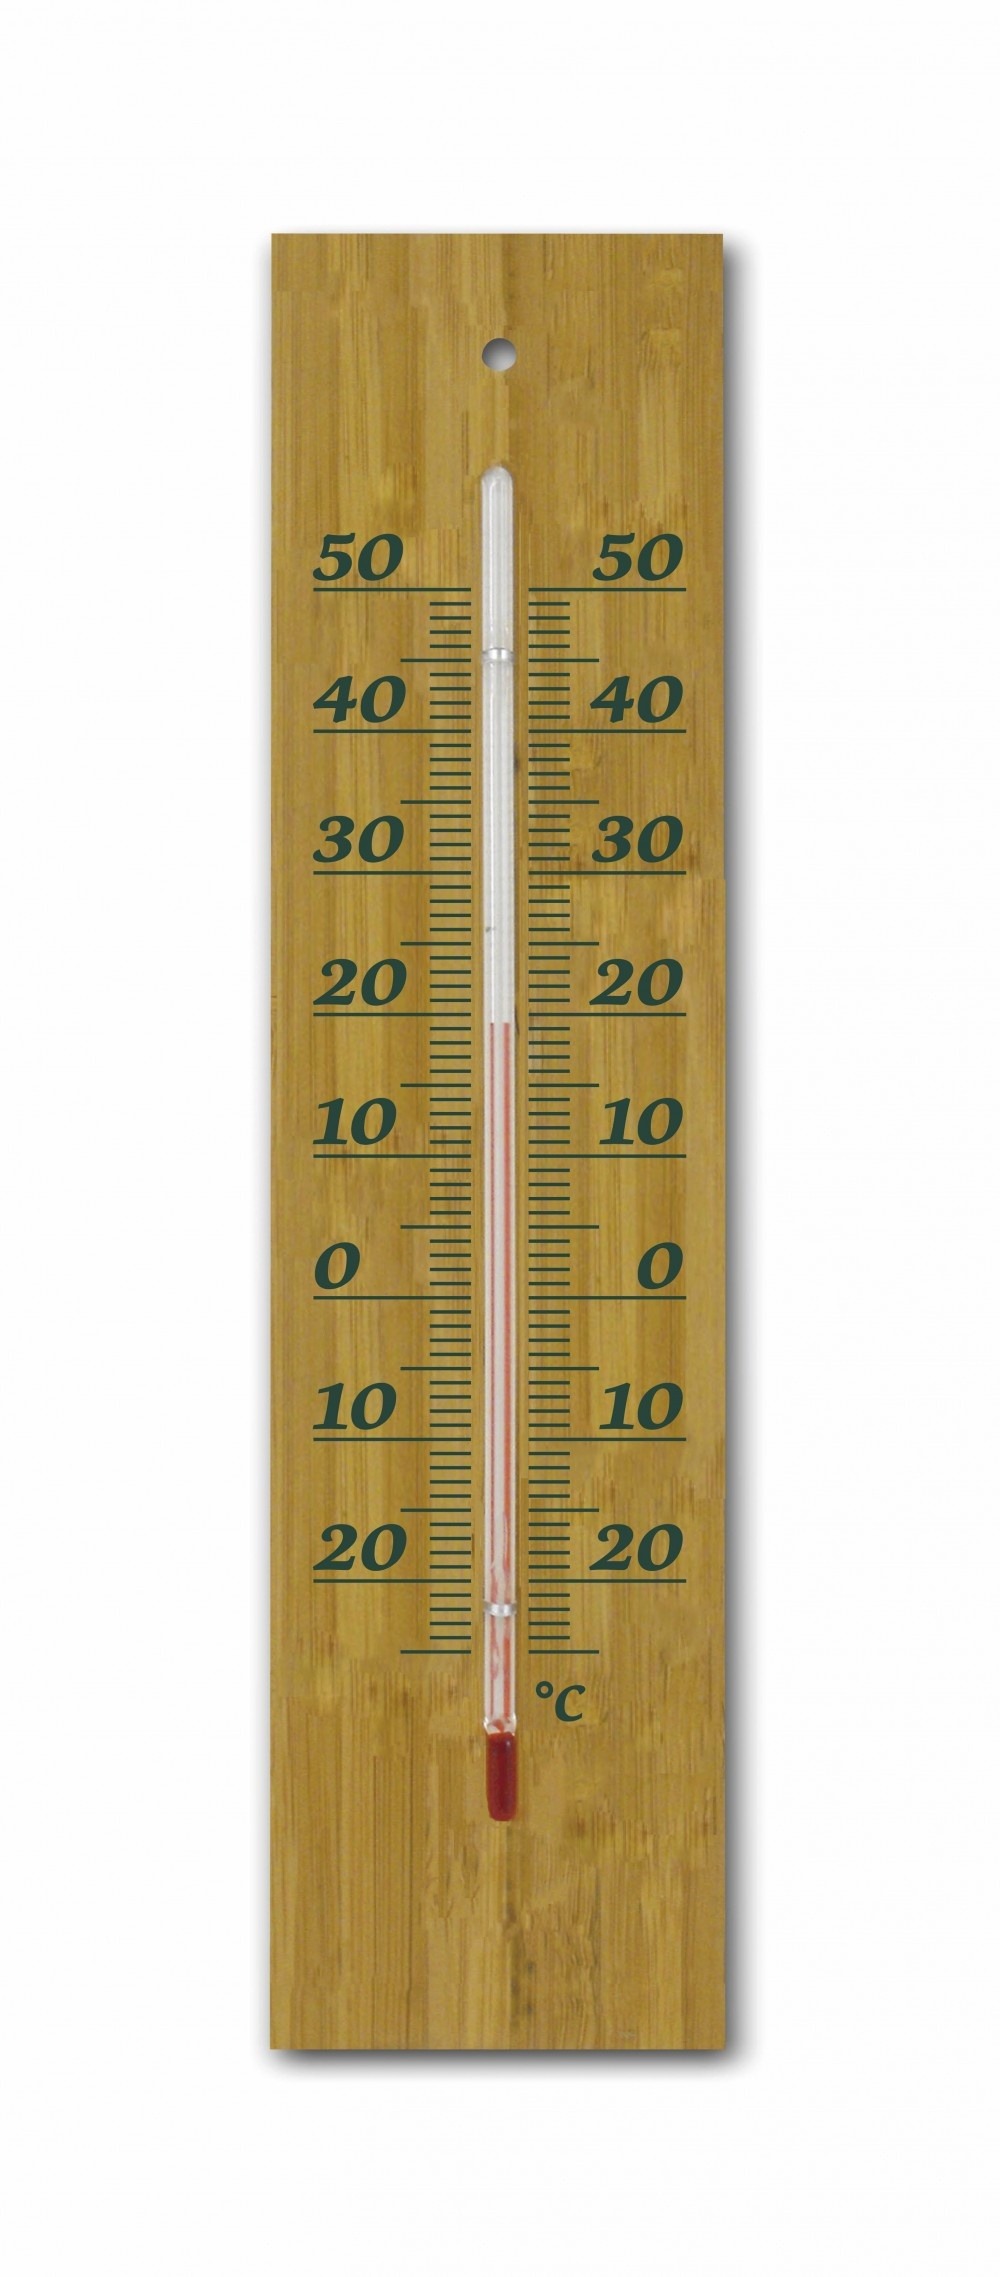 Thermomètre intérieur/extérieur